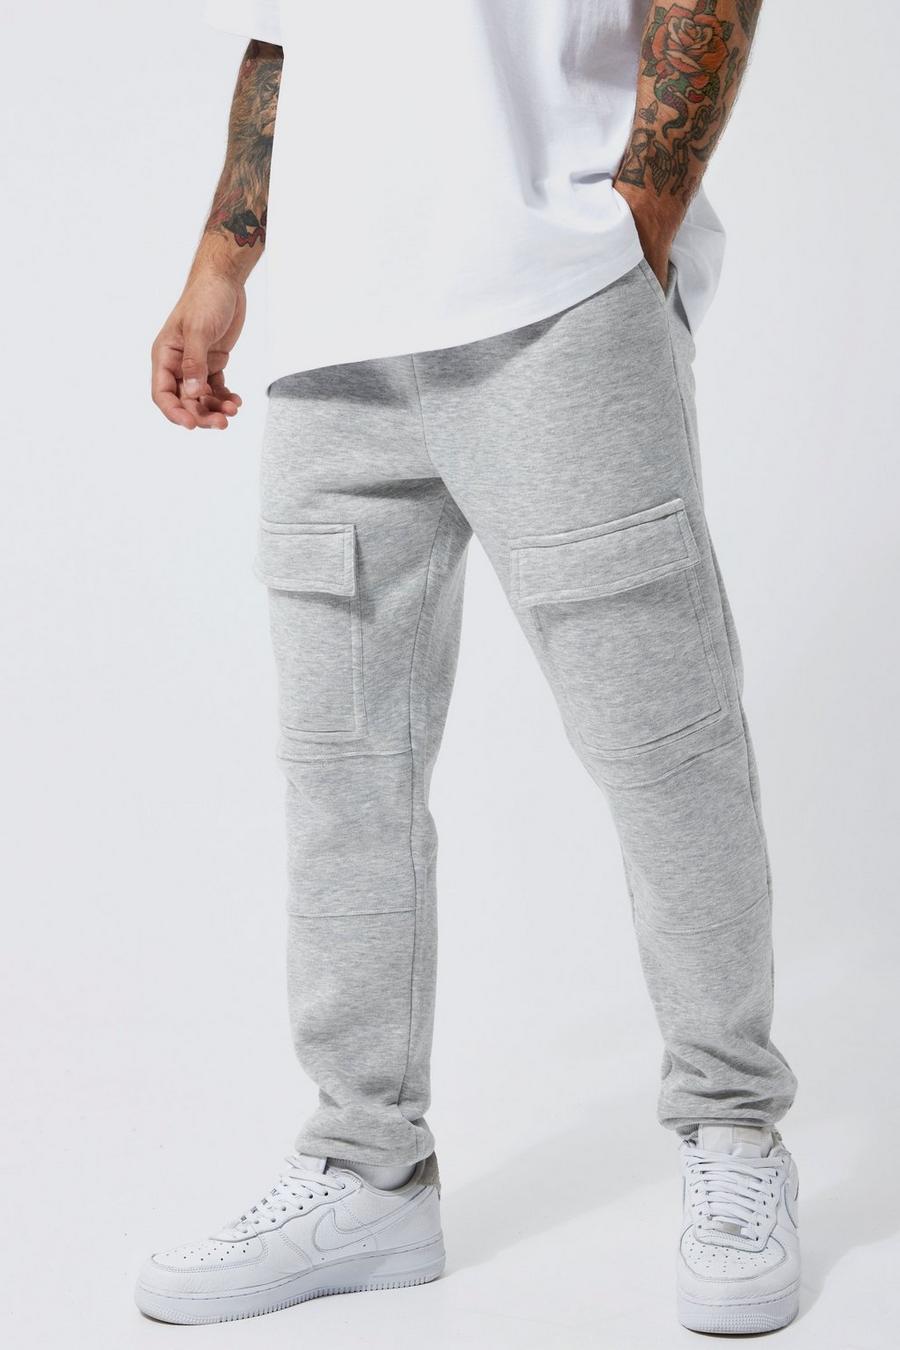 Pantalón deportivo cargo ajustado, Grey marl grigio